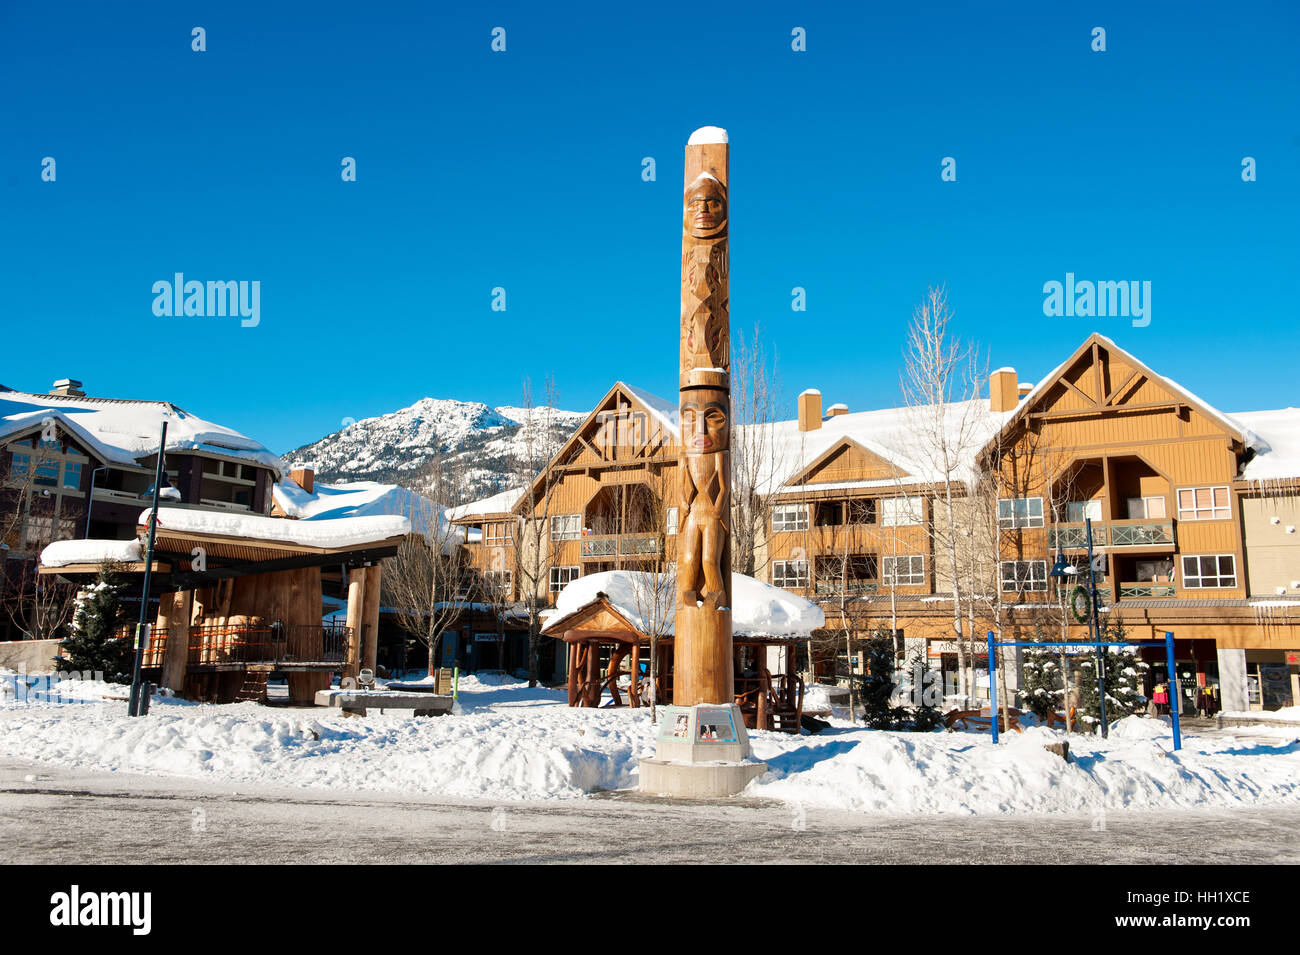 Le Village de Whistler, un jour ensoleillé en hiver. Whistler, BC, Canada. Banque D'Images